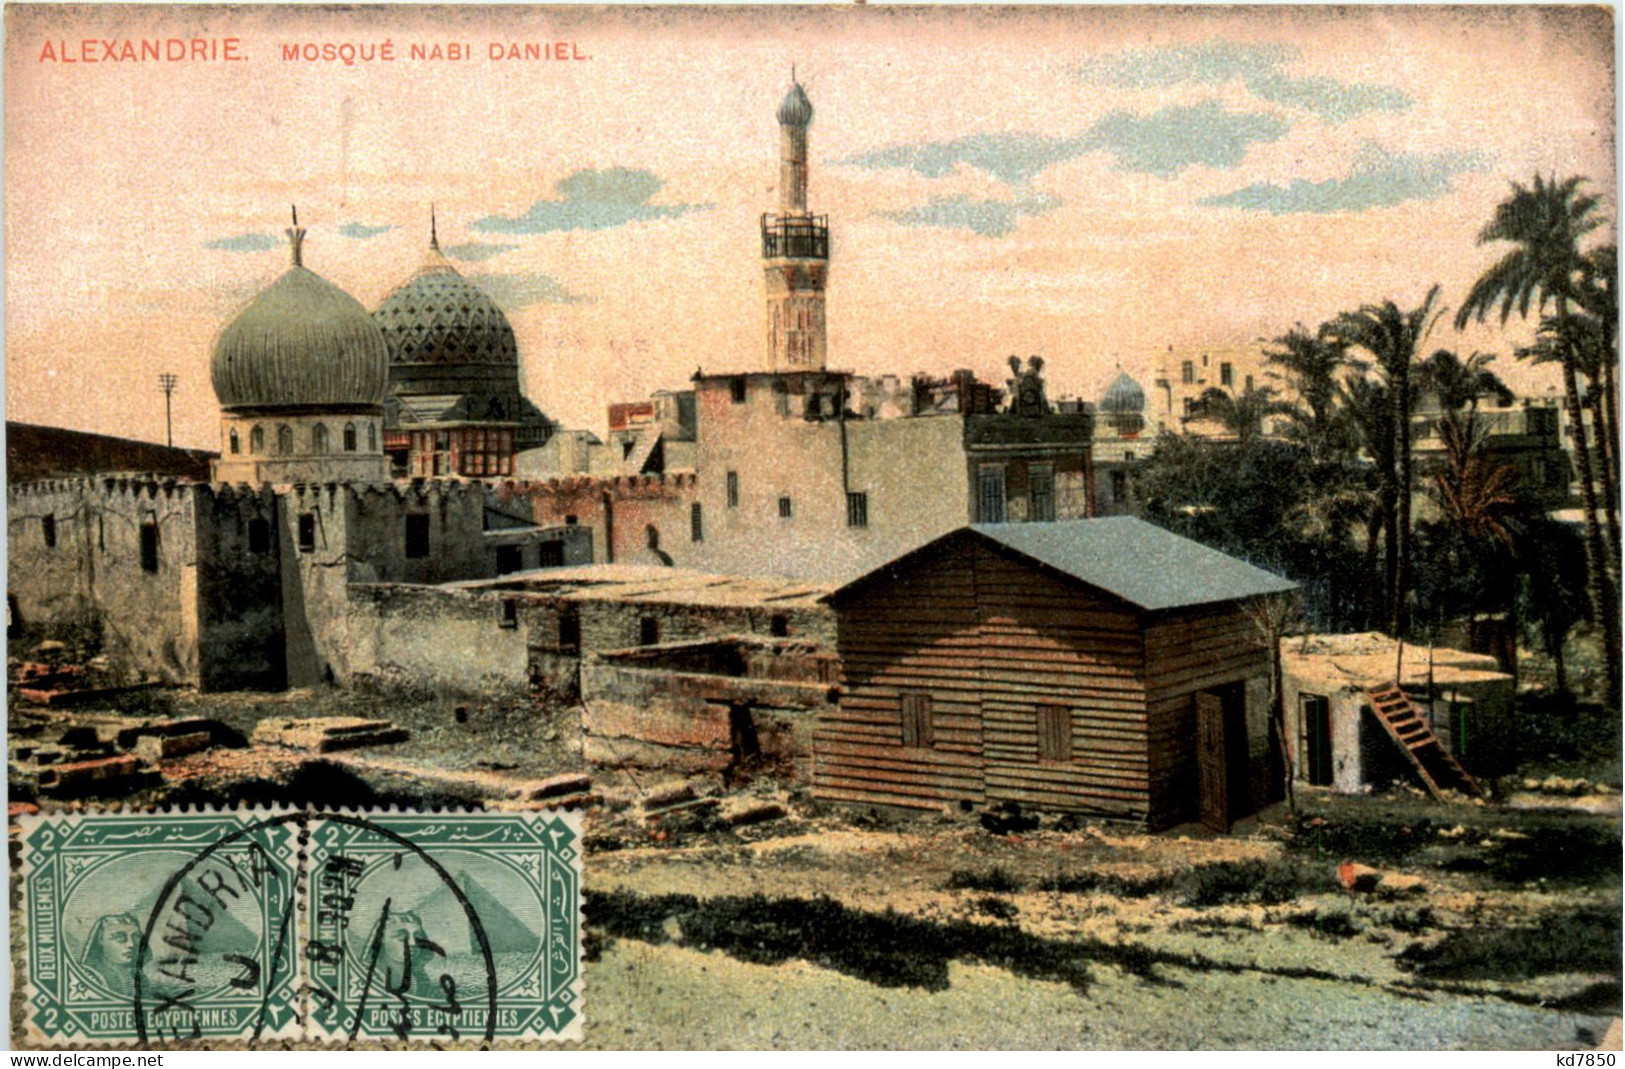 Alexandrie - Mosque Nabi Daniel - Alexandria